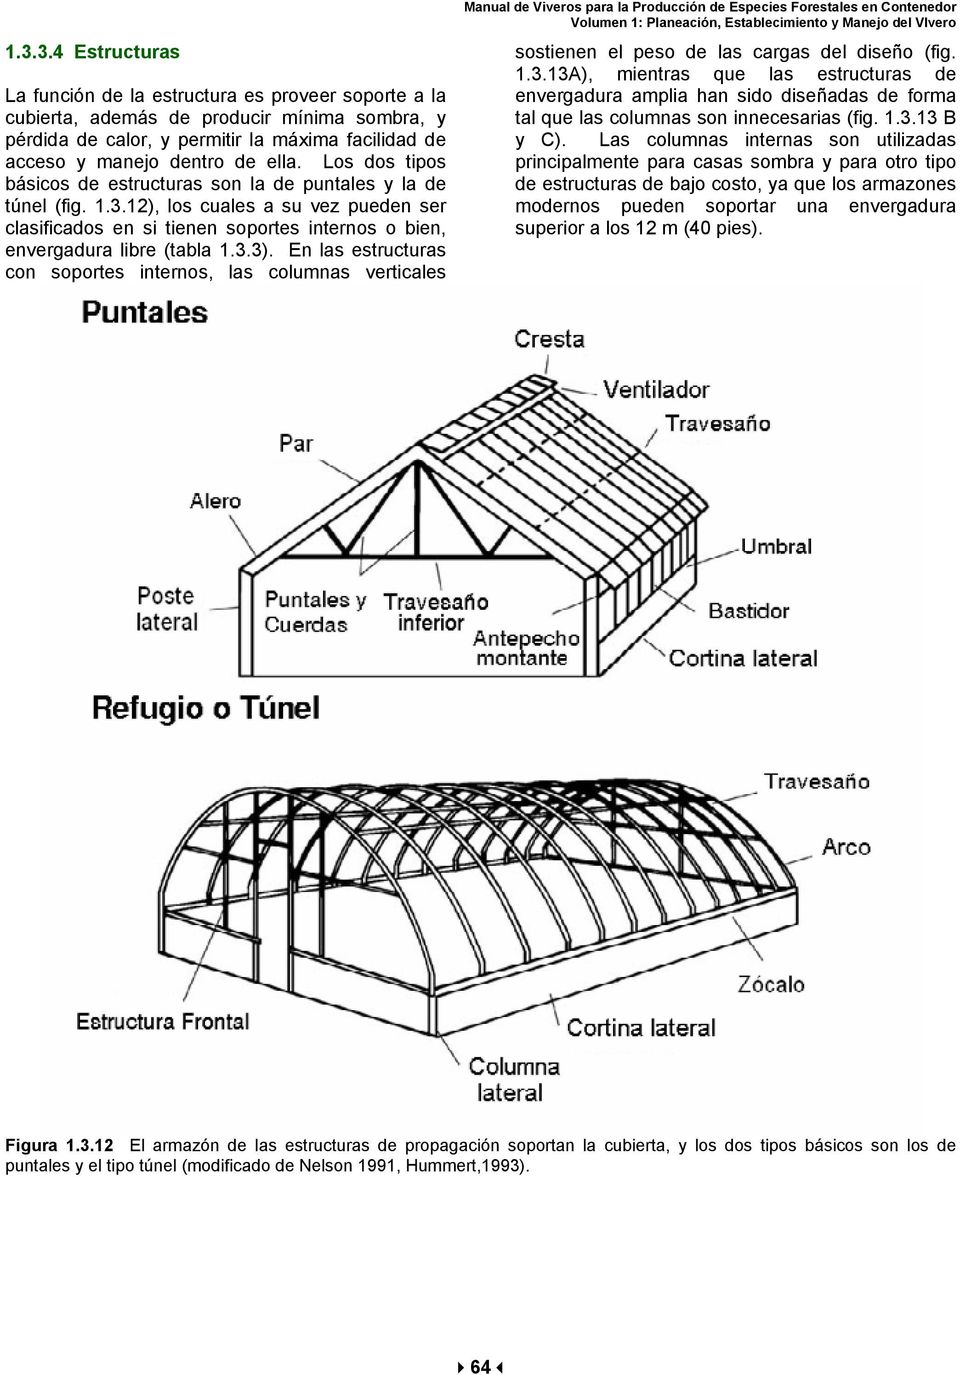 En las estructuras con soportes internos, las columnas verticales sostienen el peso de las cargas del diseño (fig. 1.3.